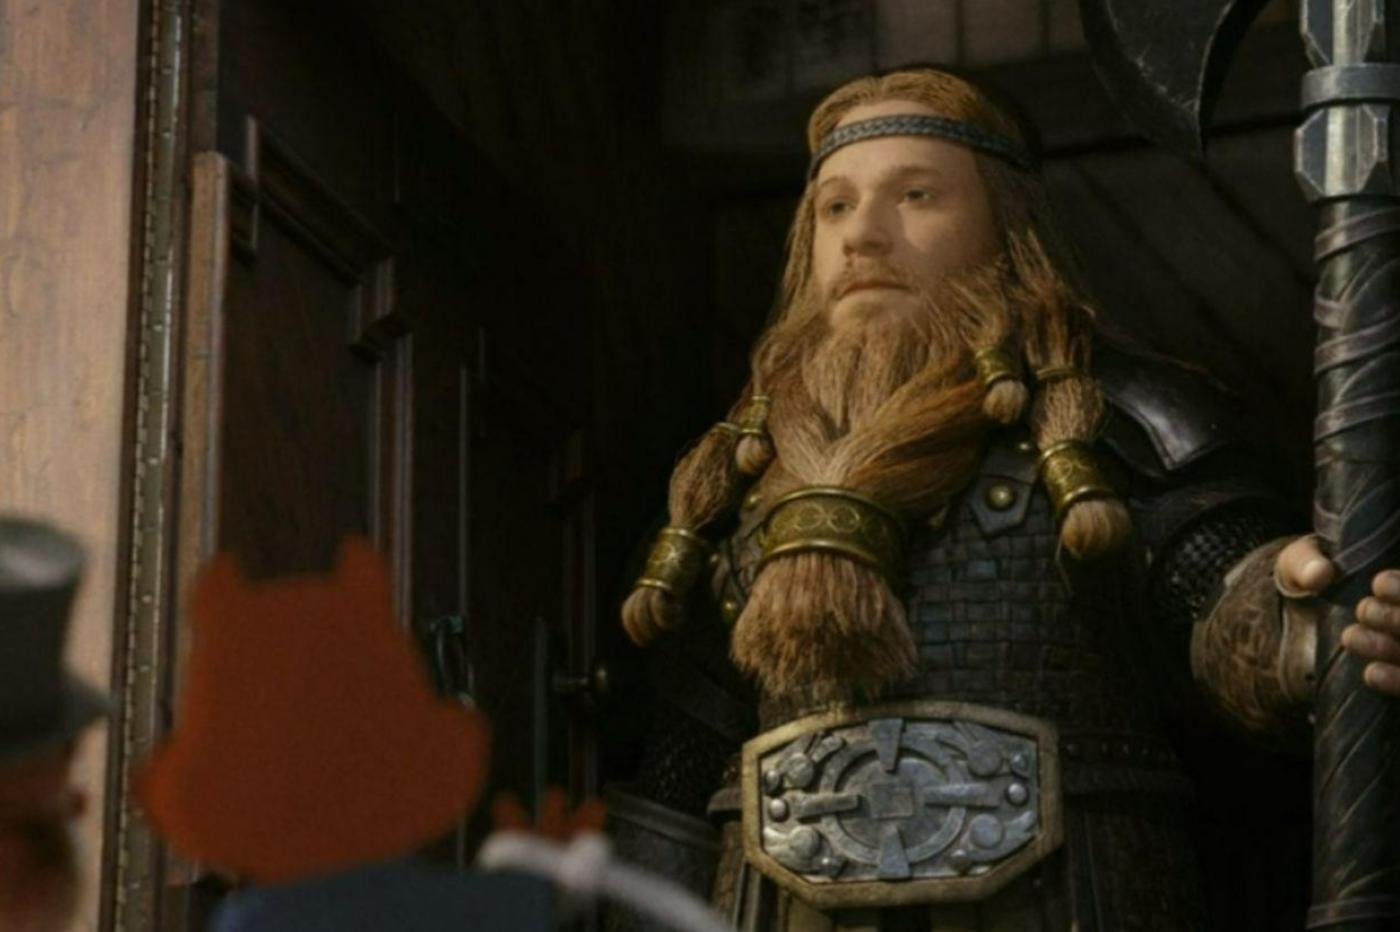 Capture d'écran du film avec un personnage viking animé en 3D dans un style similaire à celui du Polar Express